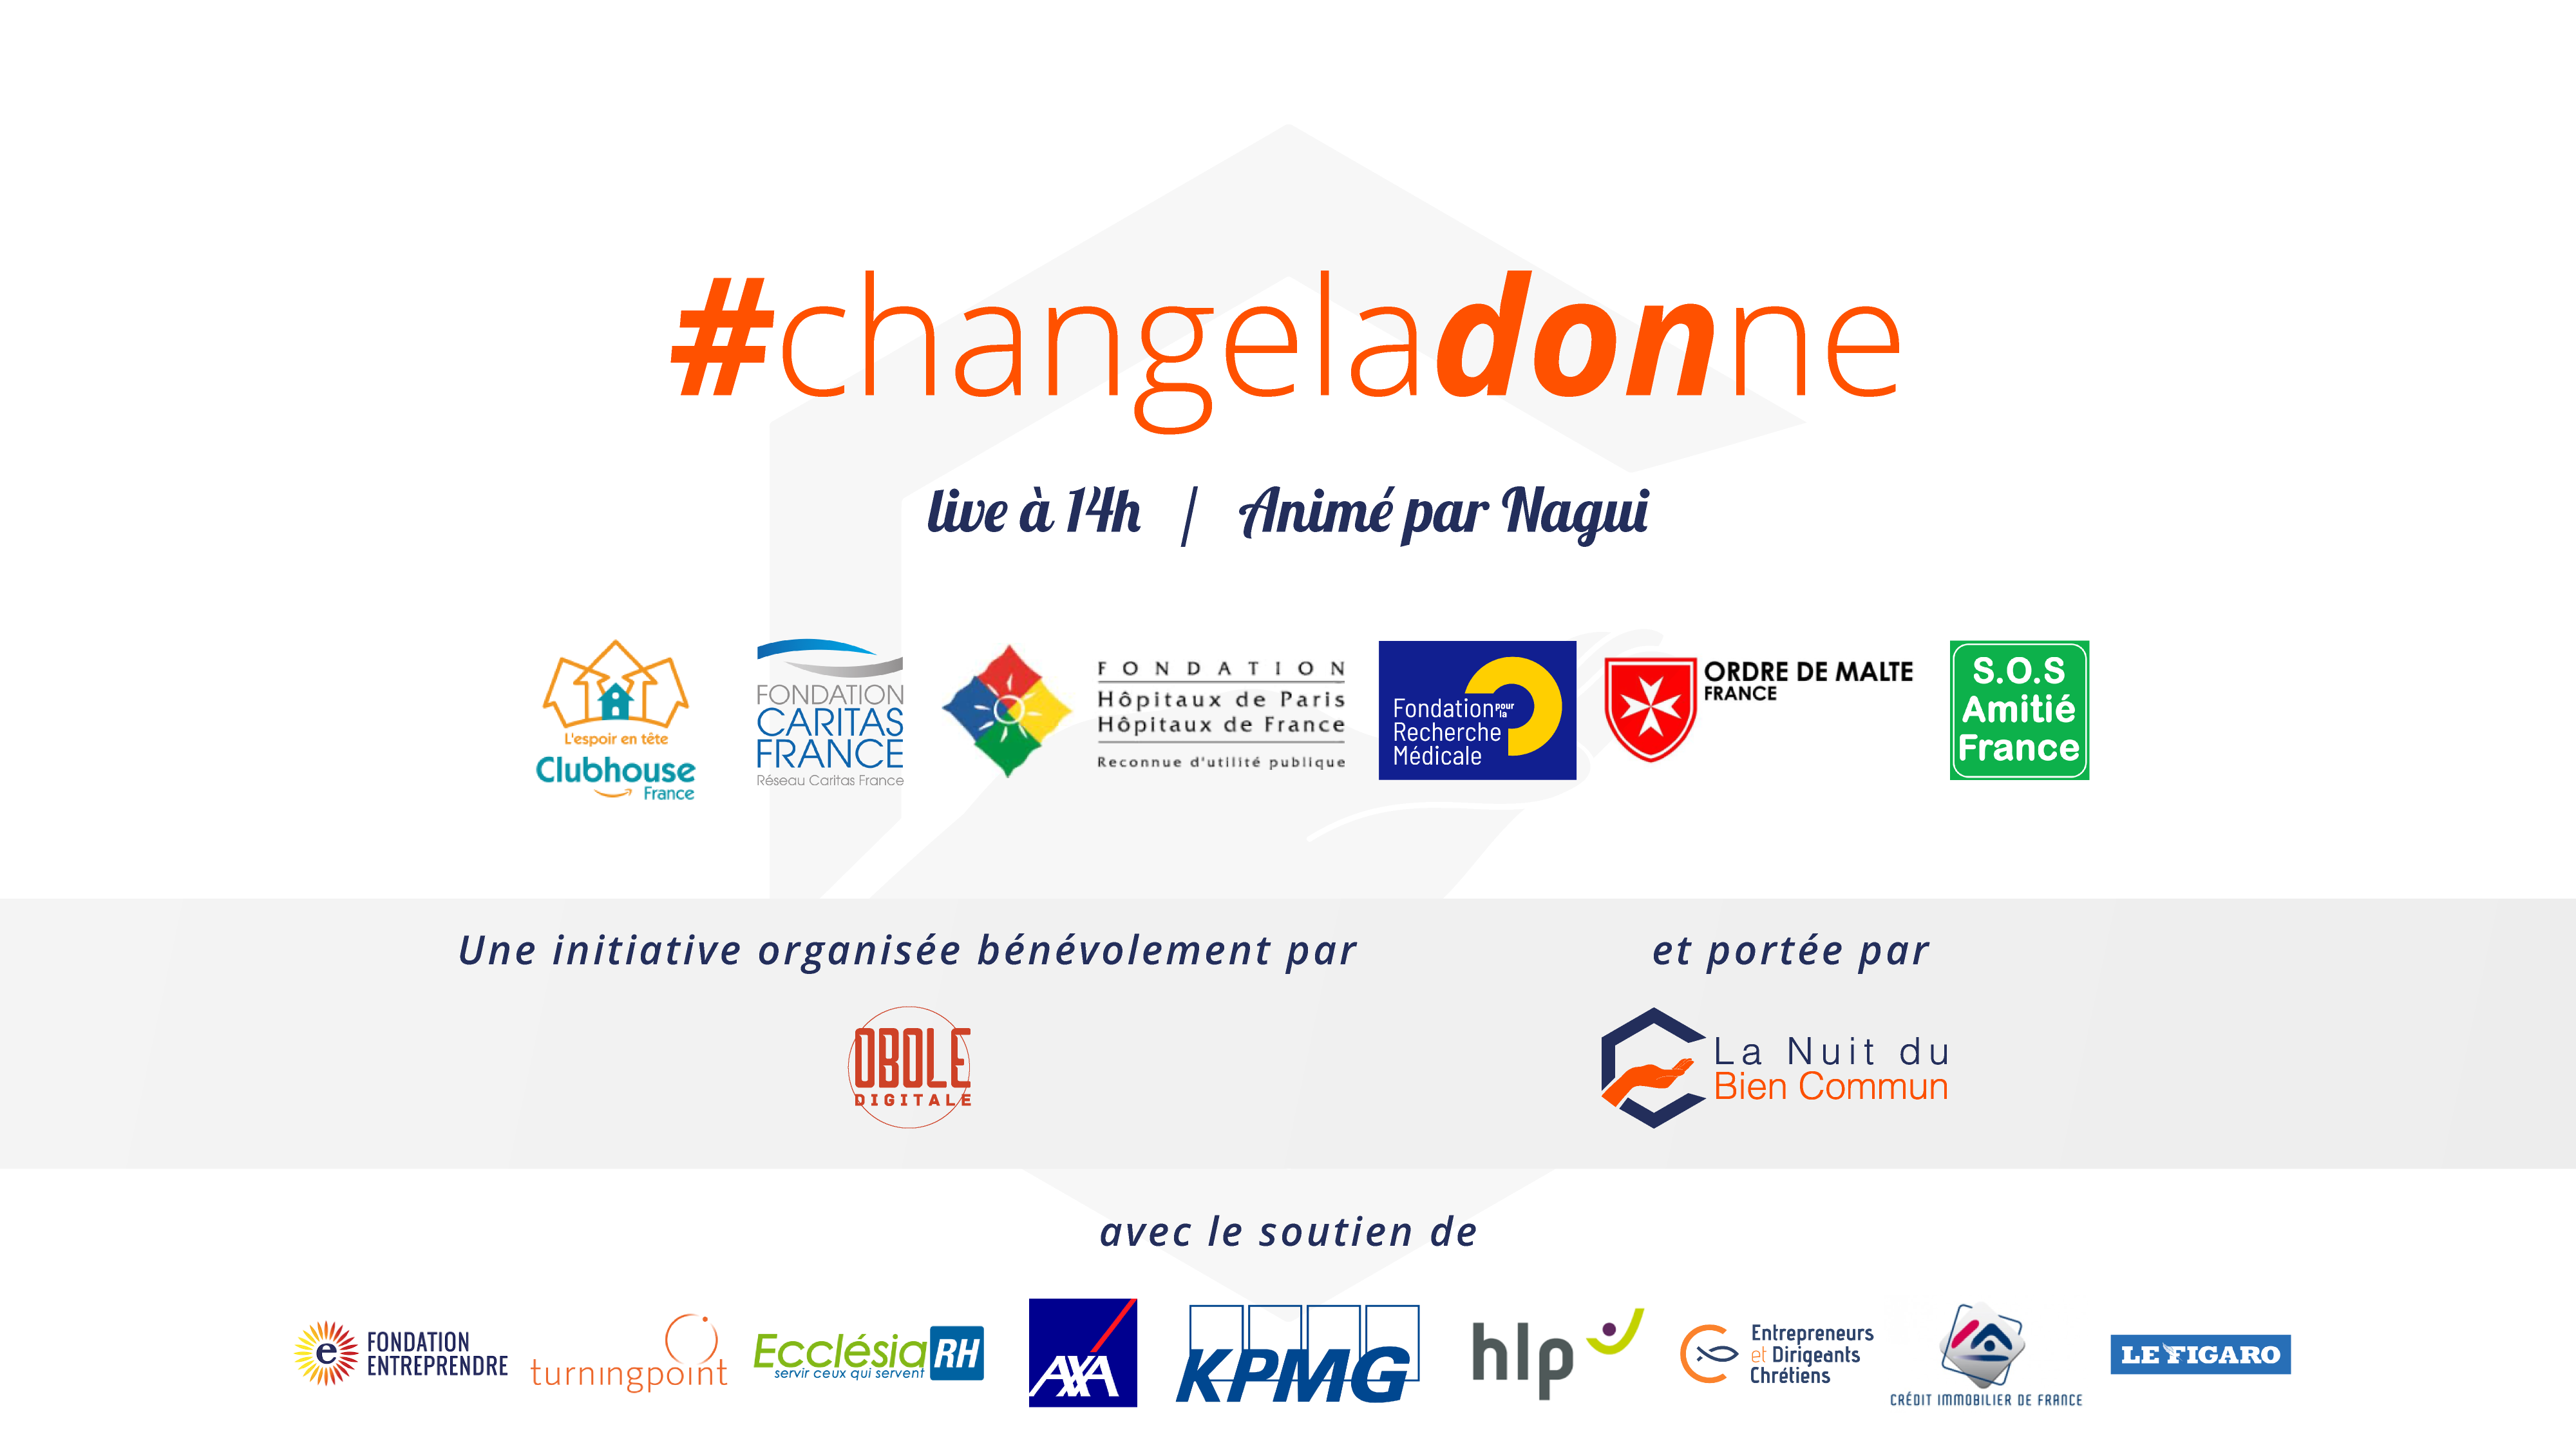 Live-dons #changeladonne le 14 avril à 14h